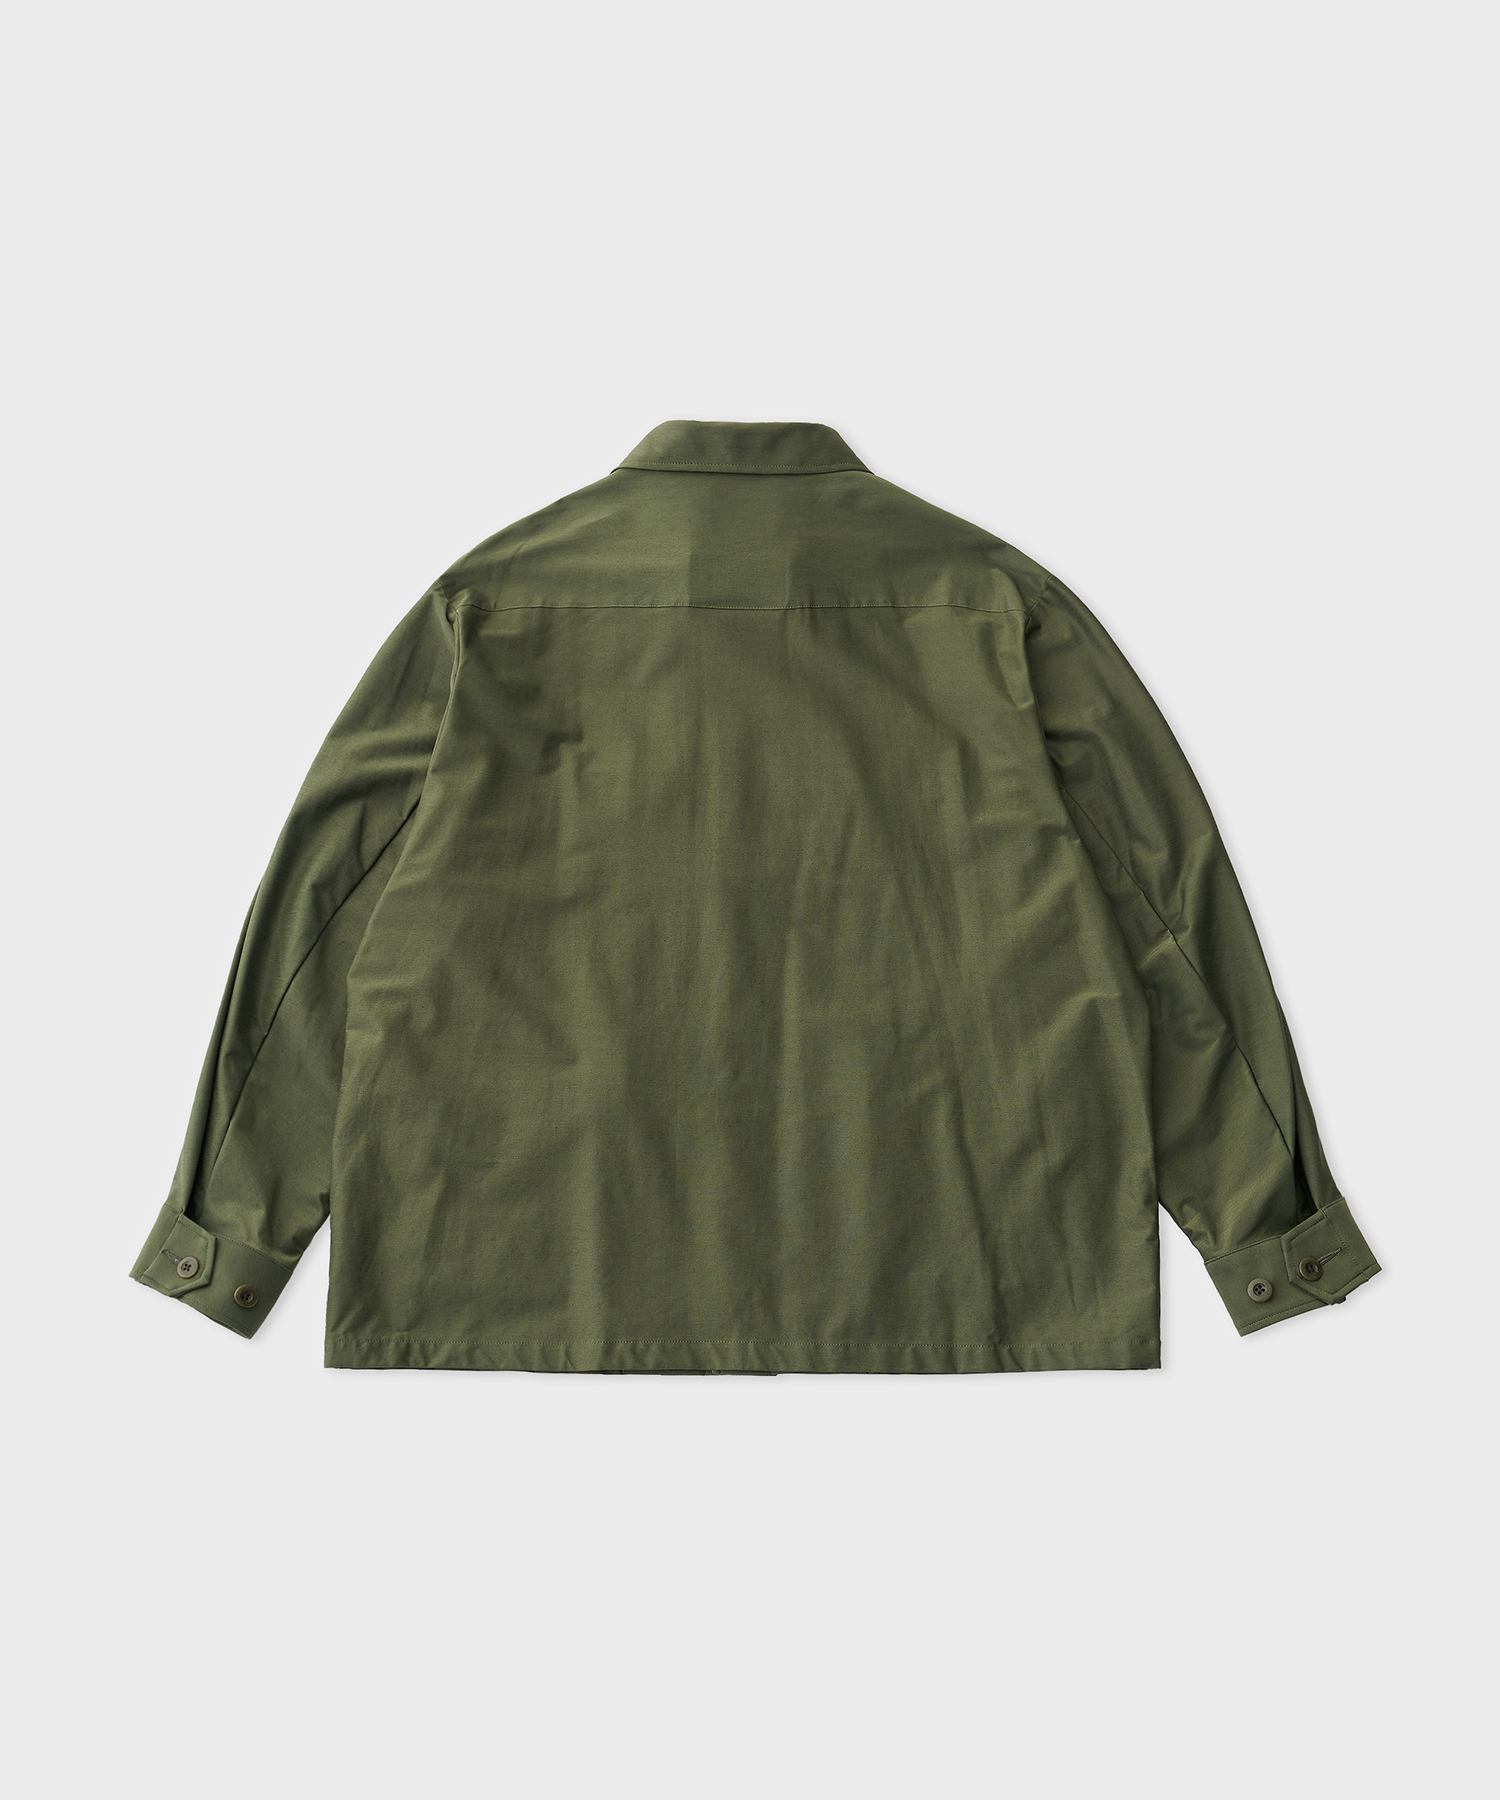 Typewriter High Gauge Jersey Fatig Jacket (Military Green)